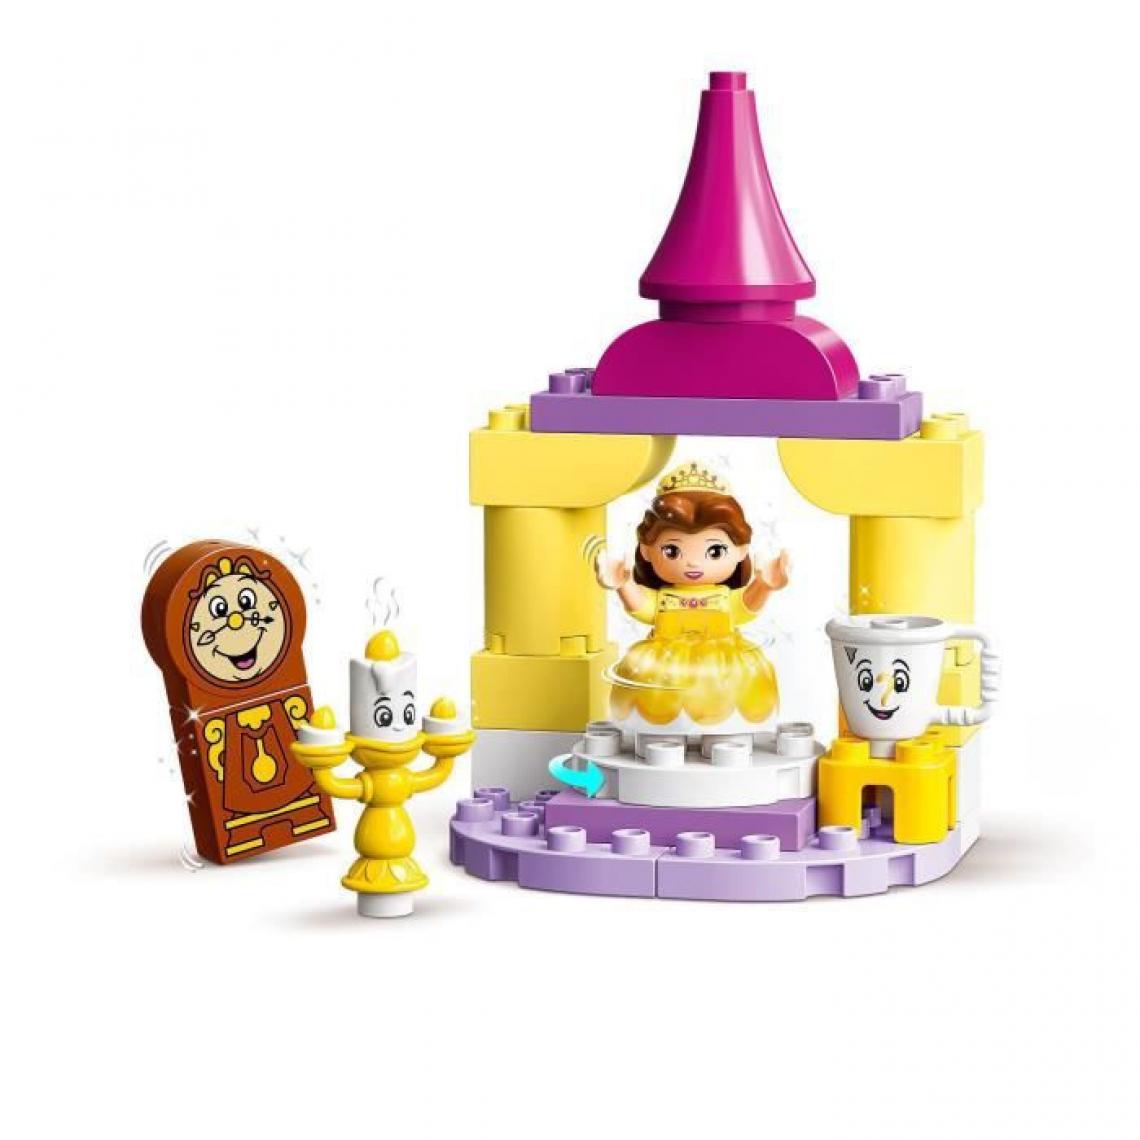 Lego - LEGO 10960 DUPLO Disney La Salle de Bal de Belle, Set Château Princesse de la Belle et la Bete, Jouet pour les Enfants des 2 An - Briques et blocs